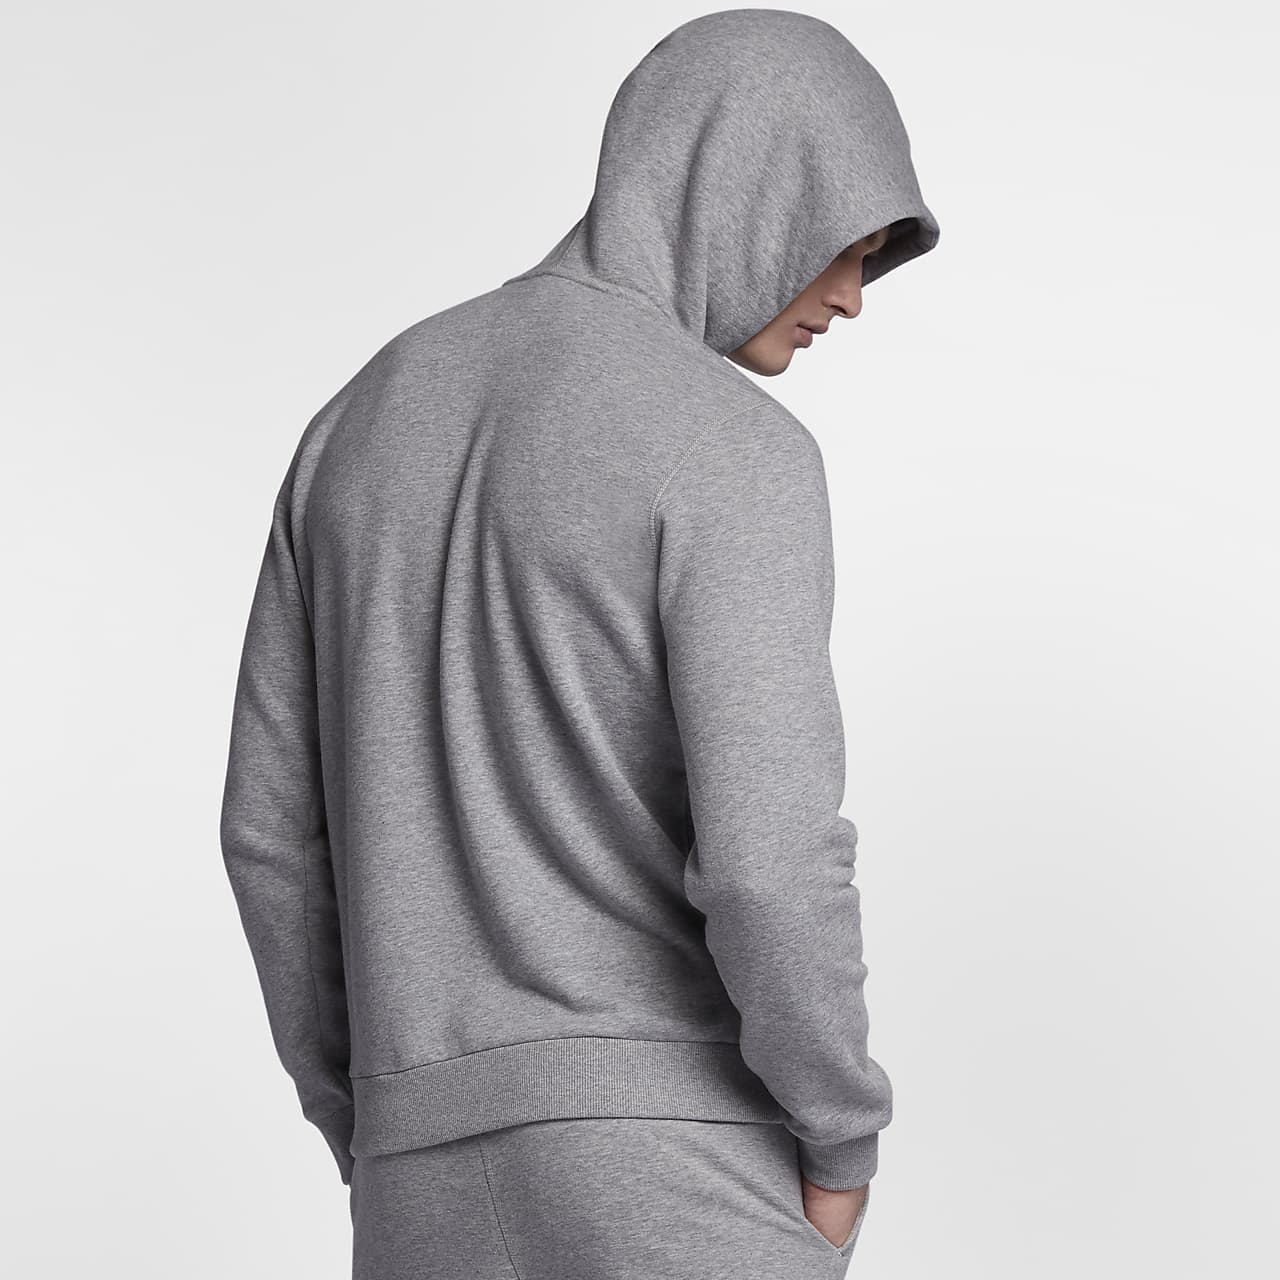 NikeLab Made In Italy Sweatshirt Men's Hoodie. Nike SA